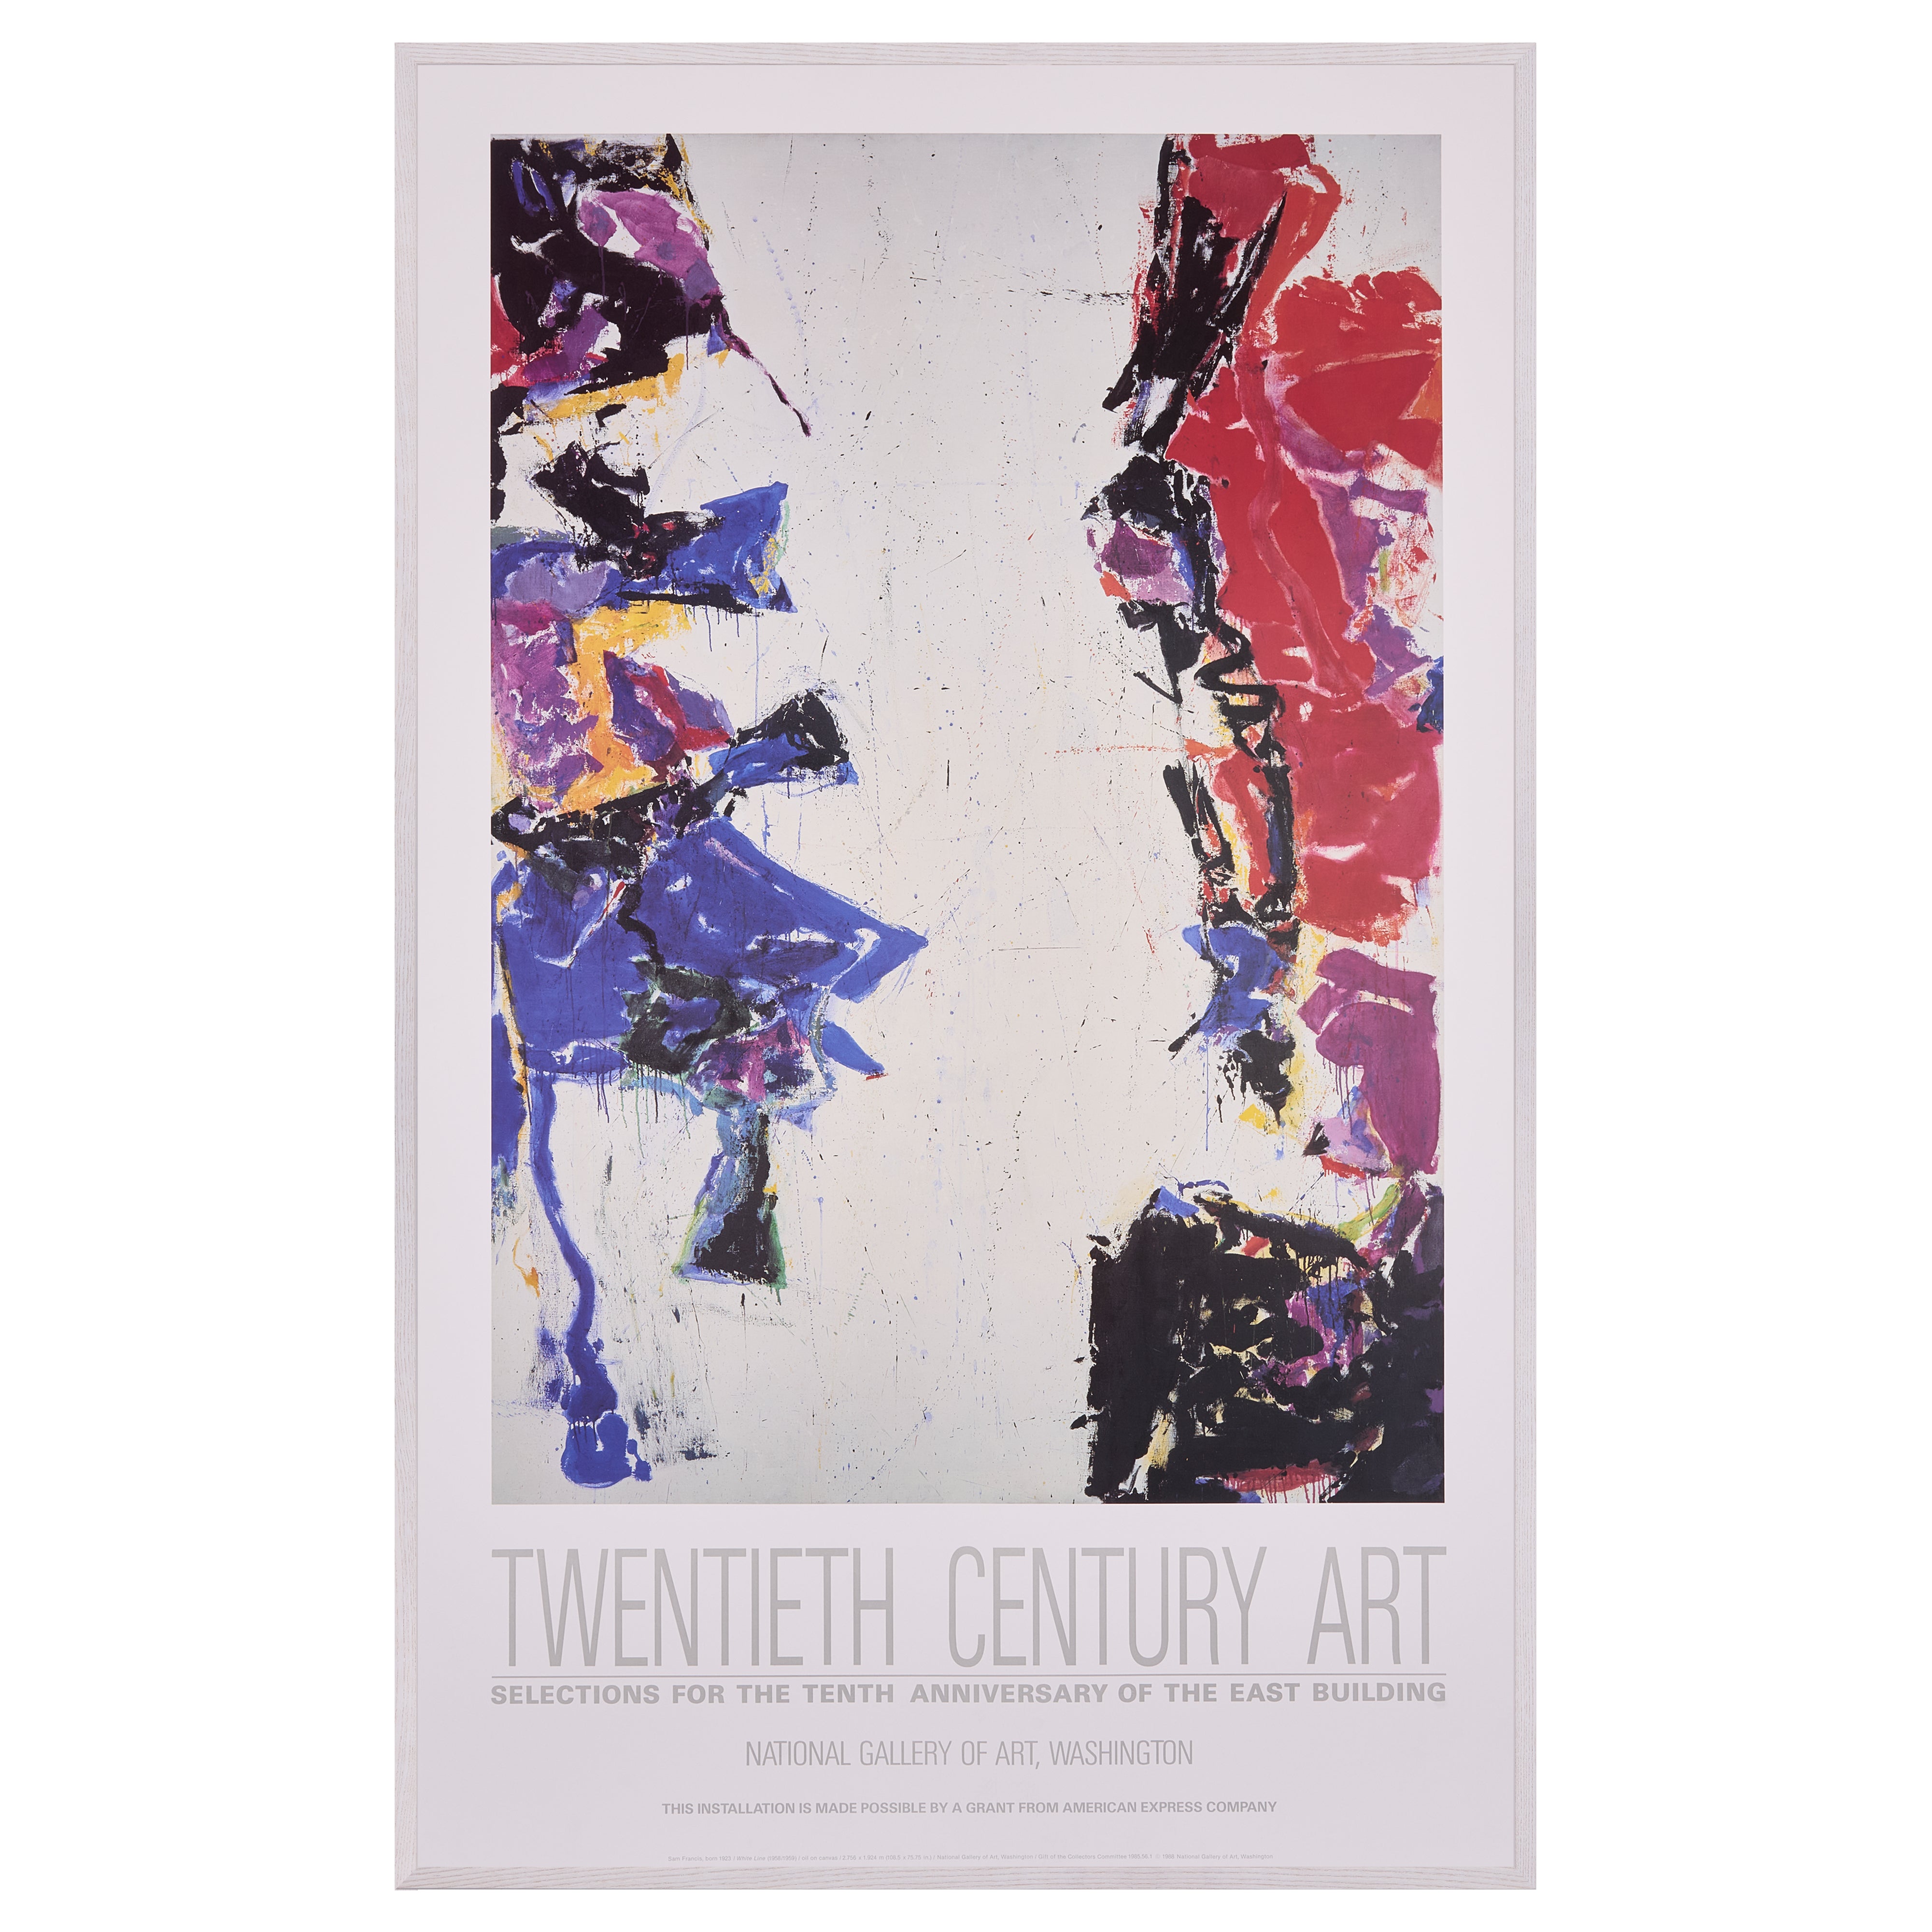 【限定10枚】TWENTIETH CENTURY ART - NATIONAL GALLERY OF ART 1988 / サム・フランシス